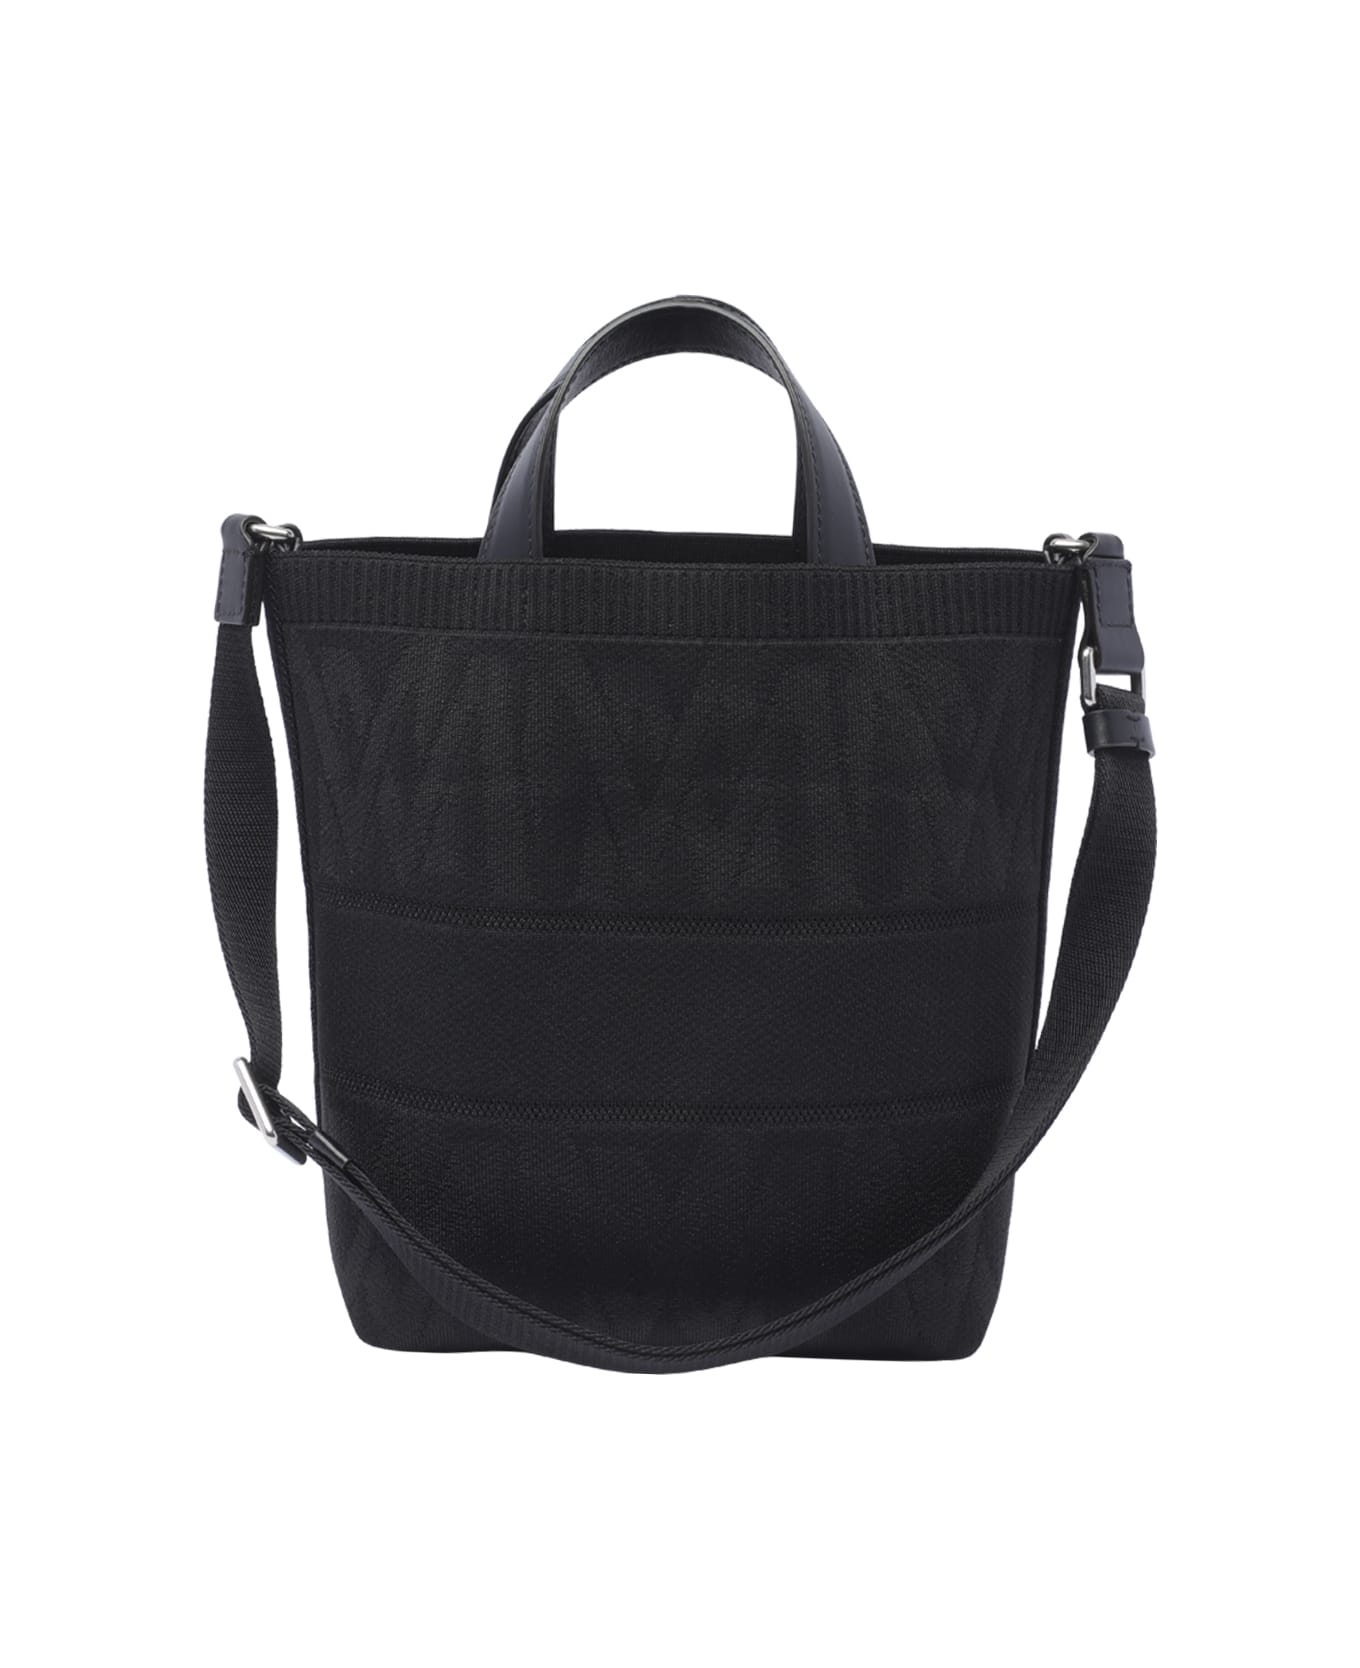 Moncler Mini Tote Bag - Black